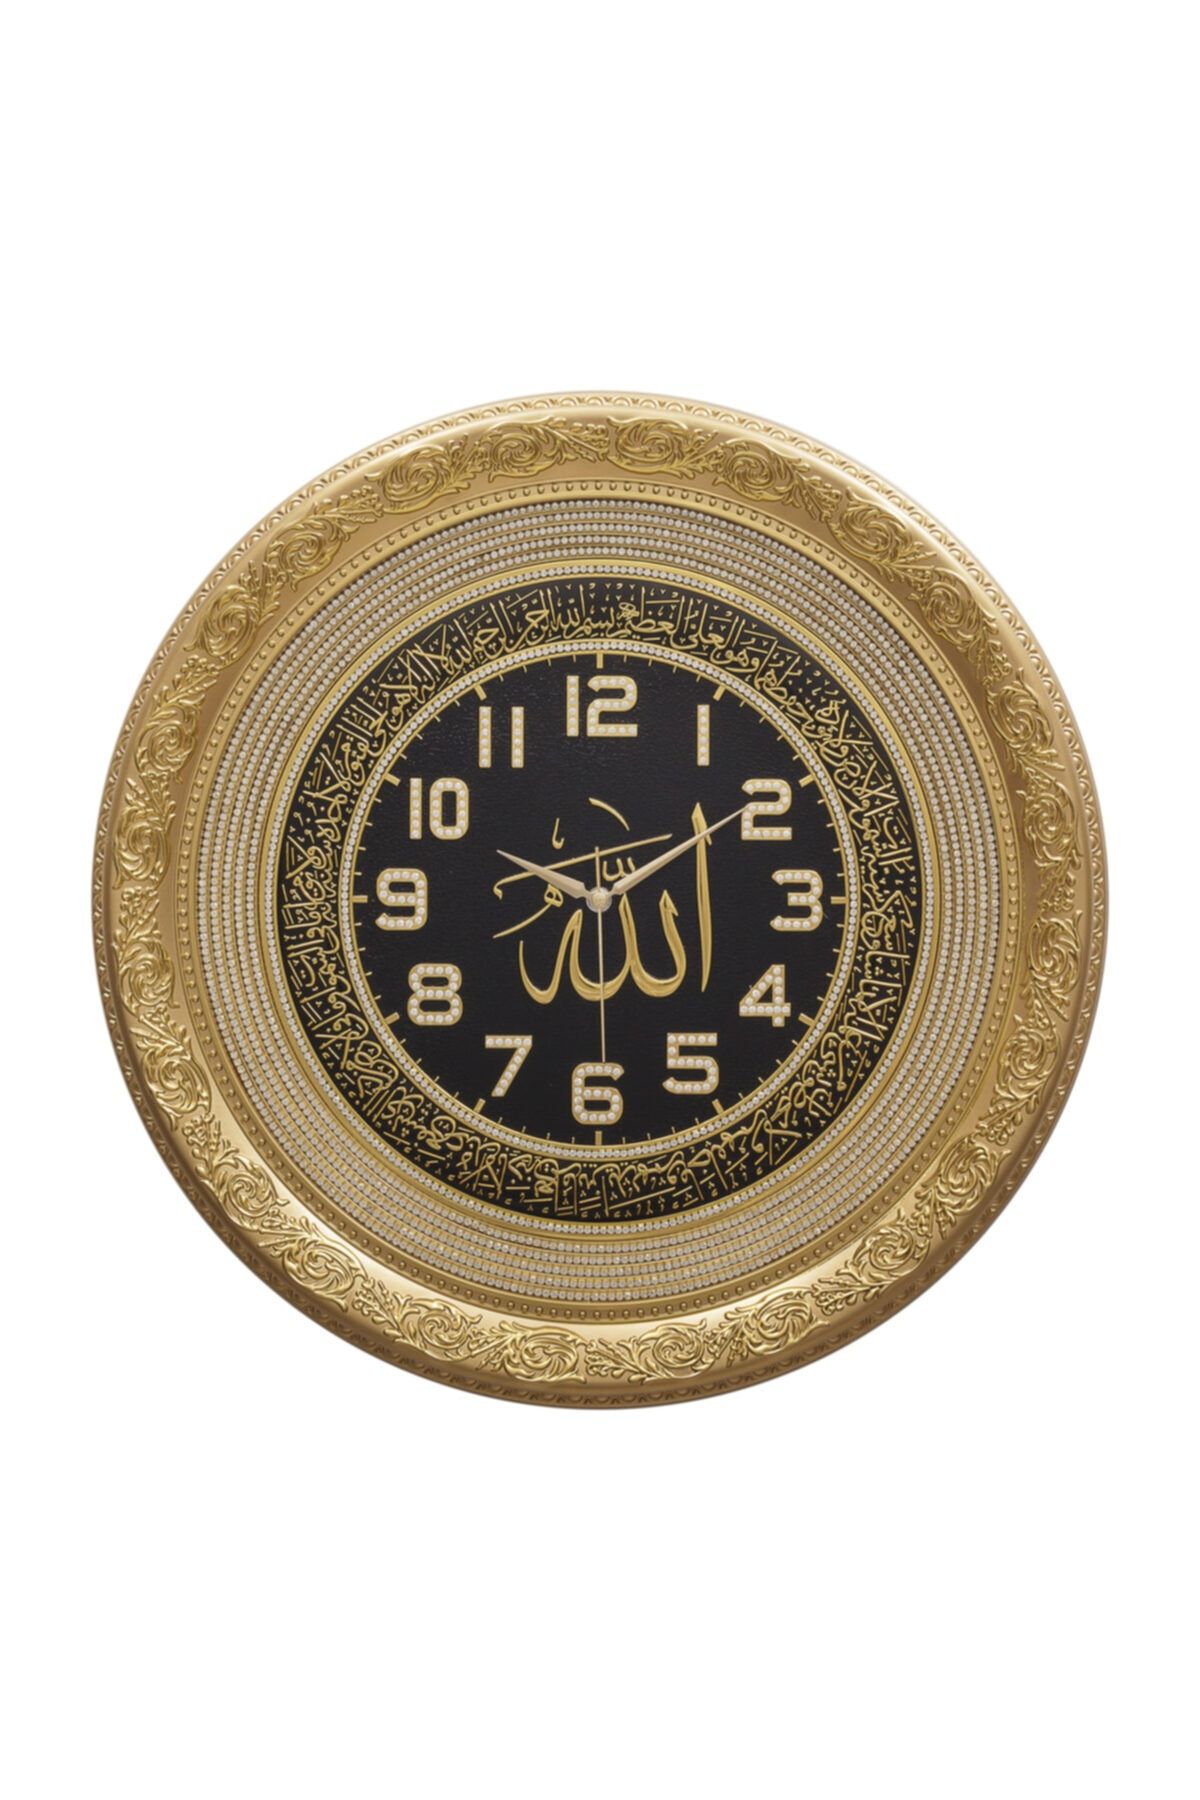 GÜNEŞ HEDİYELİK Saat Taşlı Ayetli Ayet-el Kürsi - Sarı 56 cm